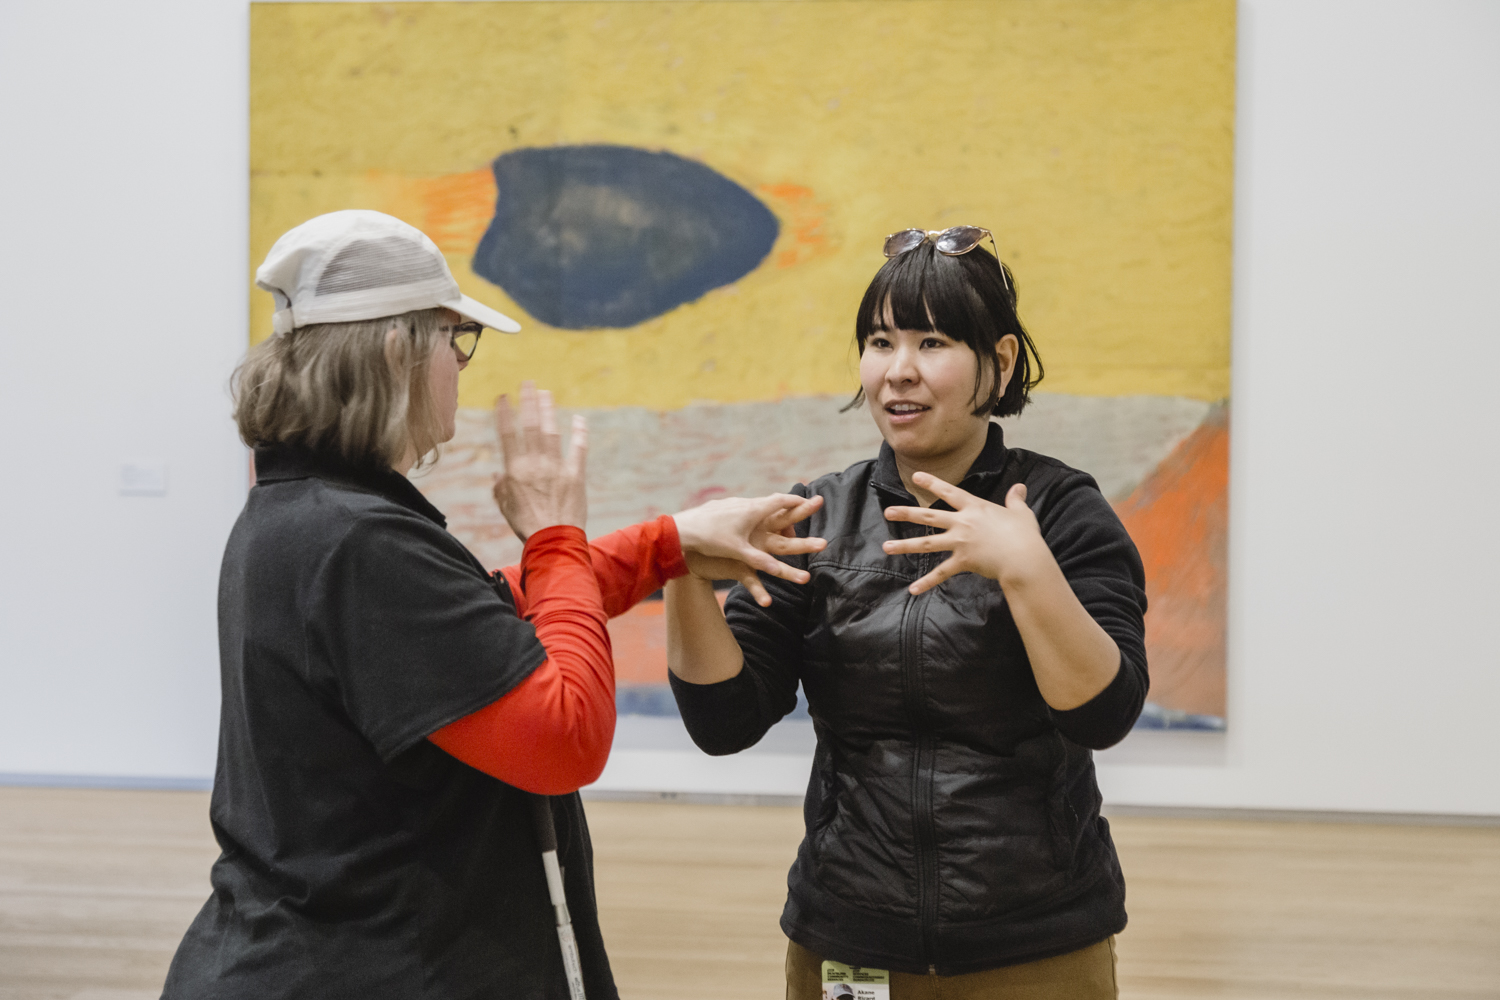 Un employé utilise la langue des signes tactile pour communiquer avec un client sourd-aveugle dans une galerie d'art.